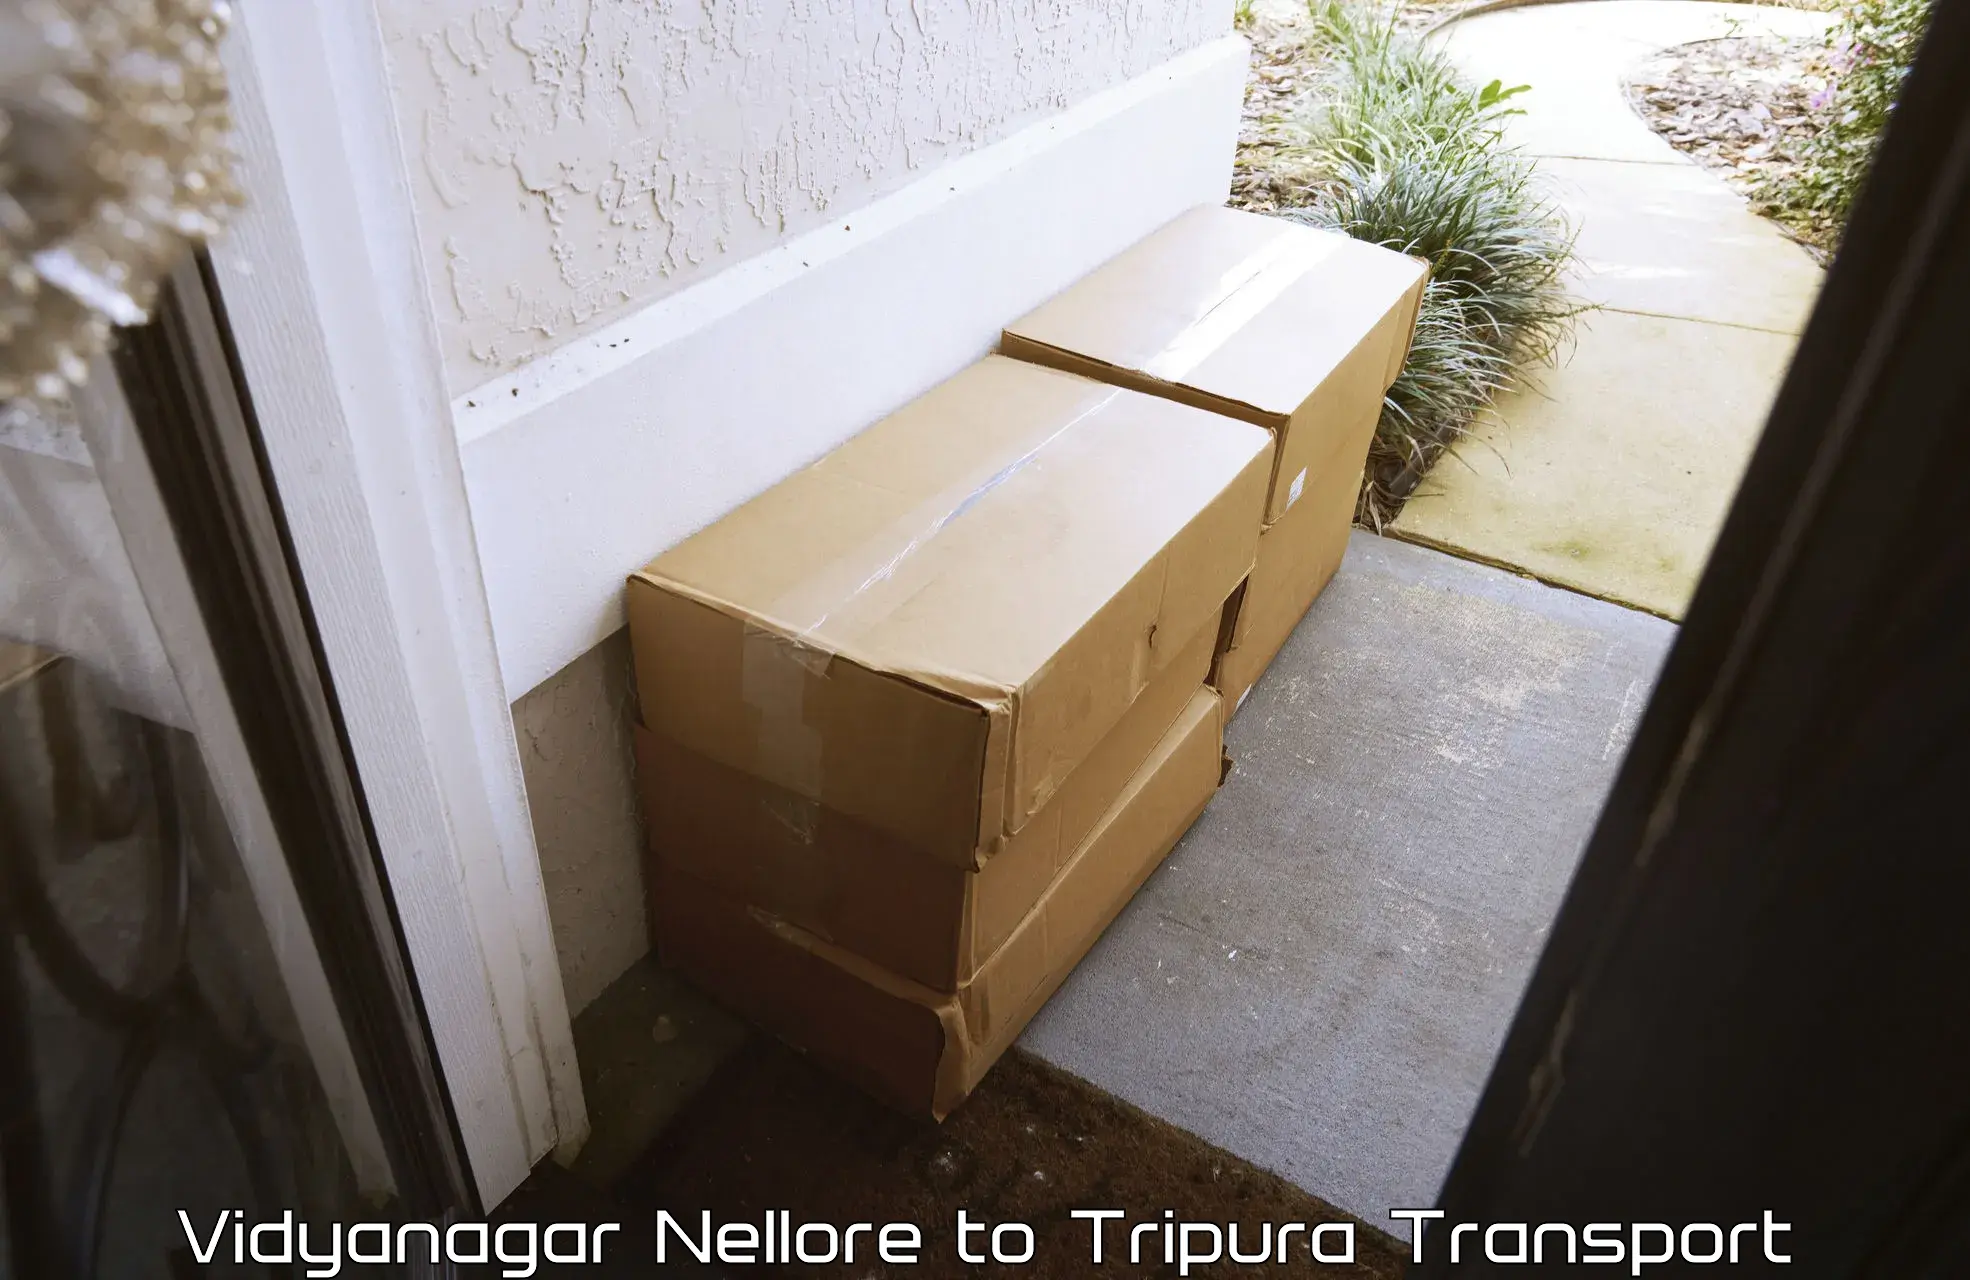 Online transport booking Vidyanagar Nellore to Tripura